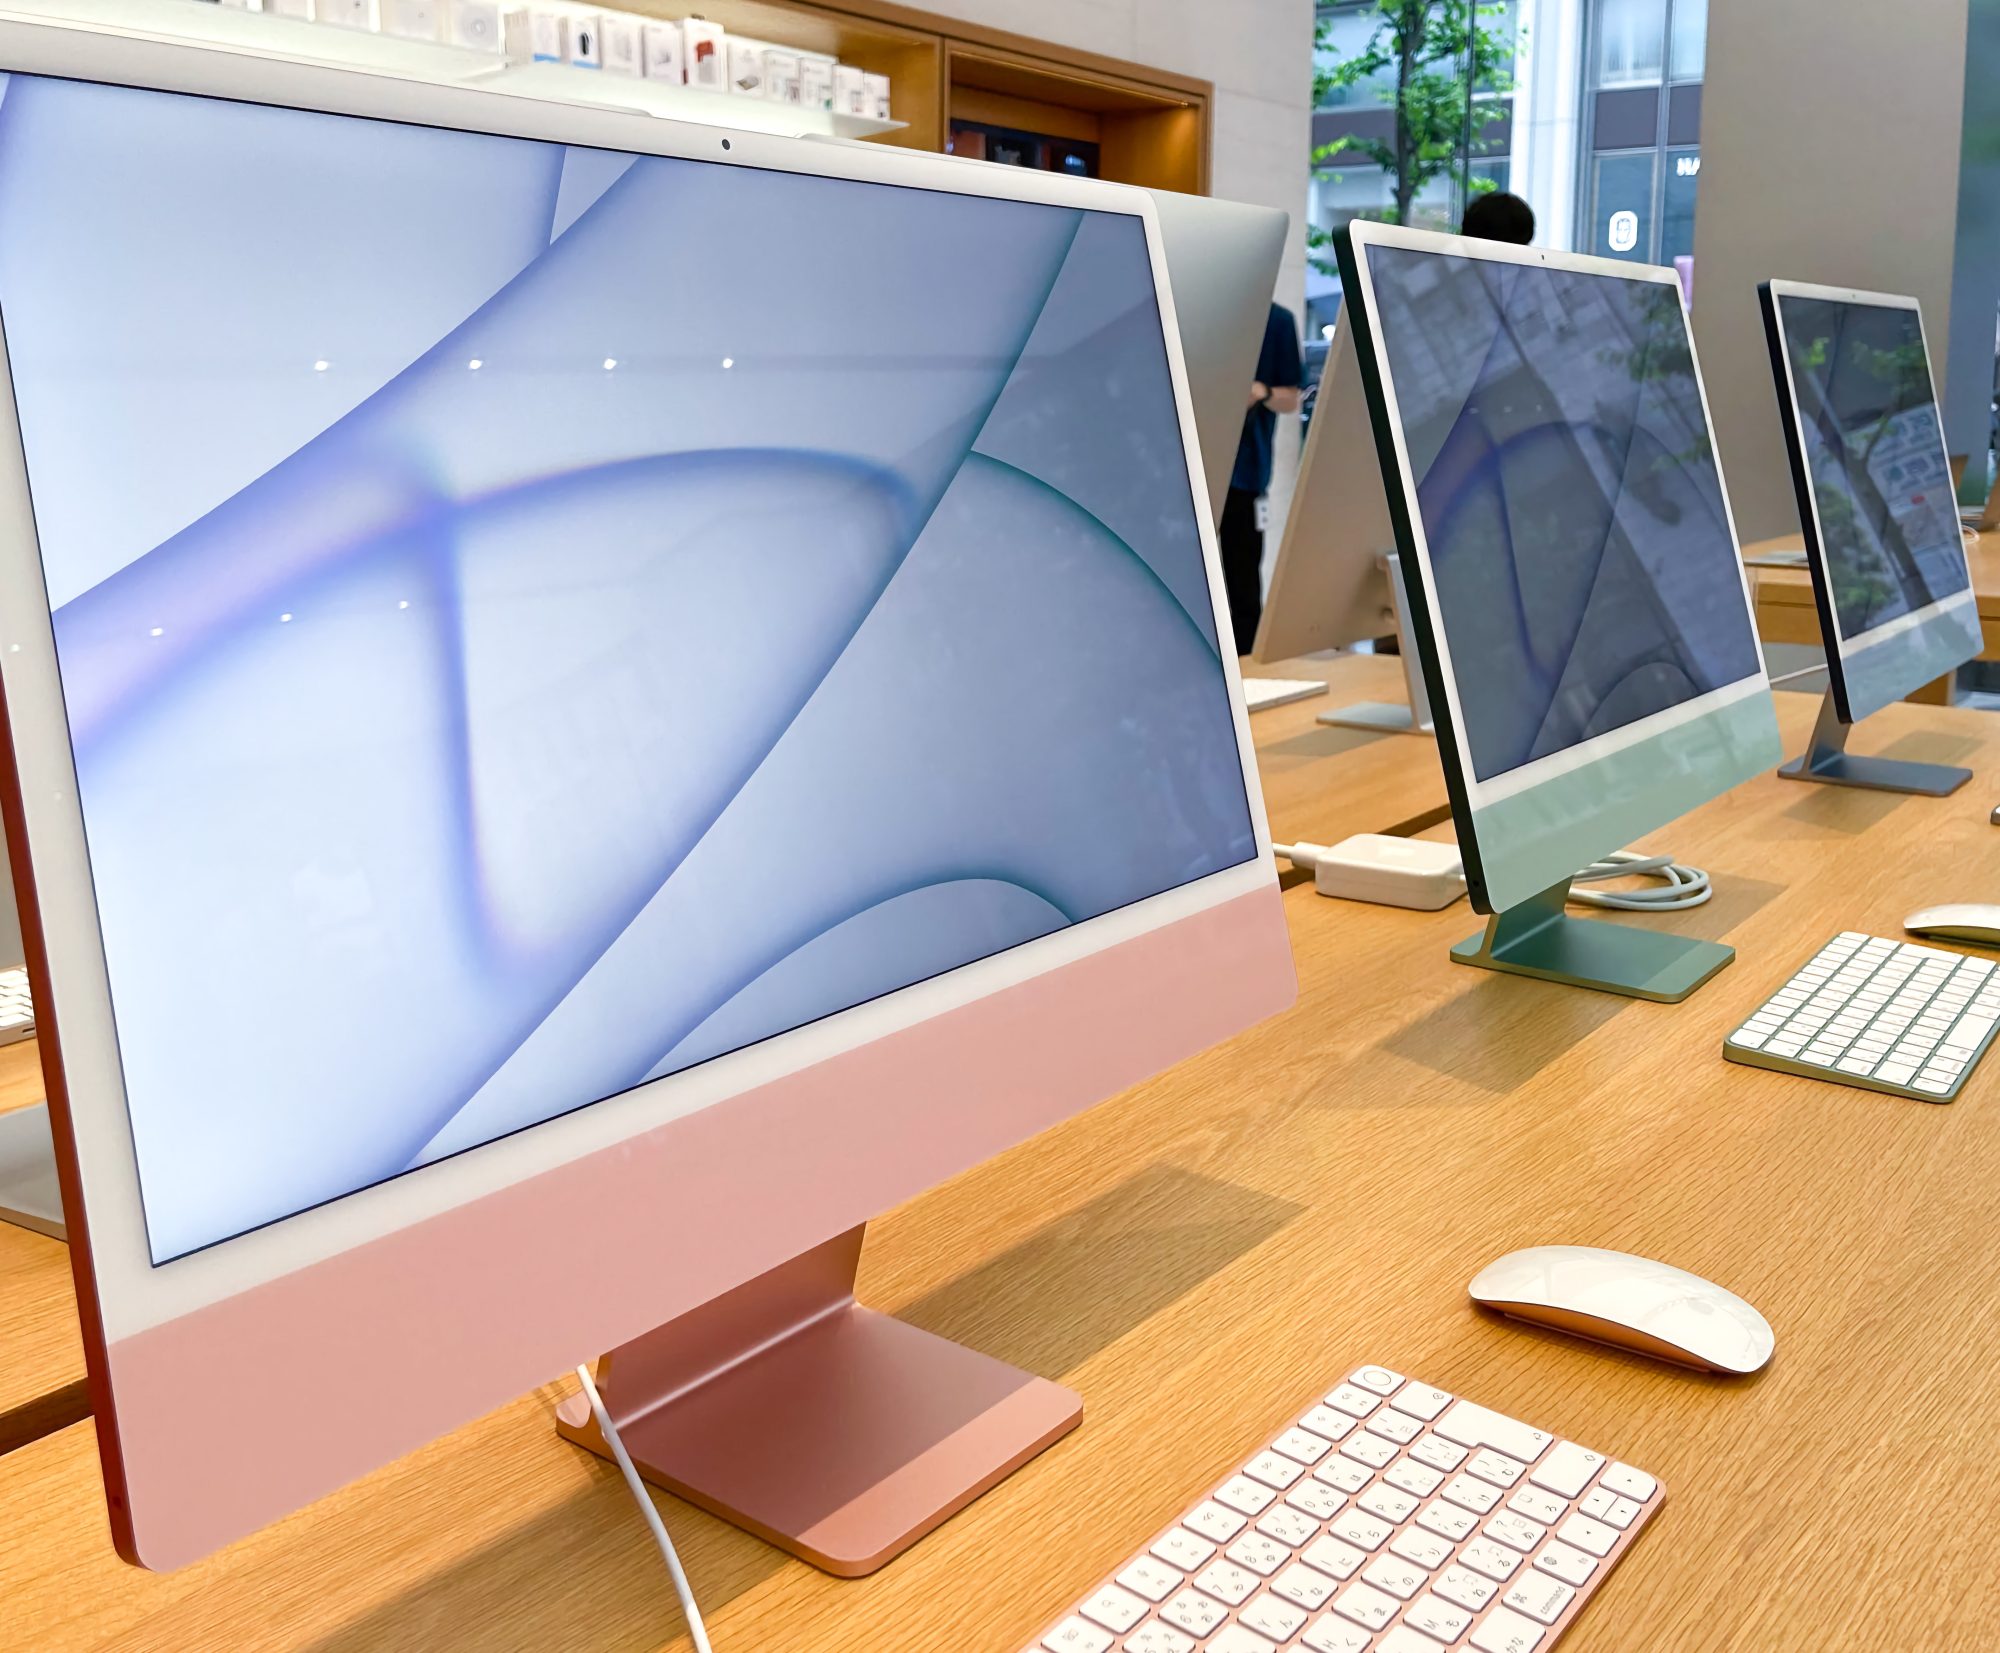 蘋果考慮將 Face ID 先用於 iMac，MacBook 螢幕太薄